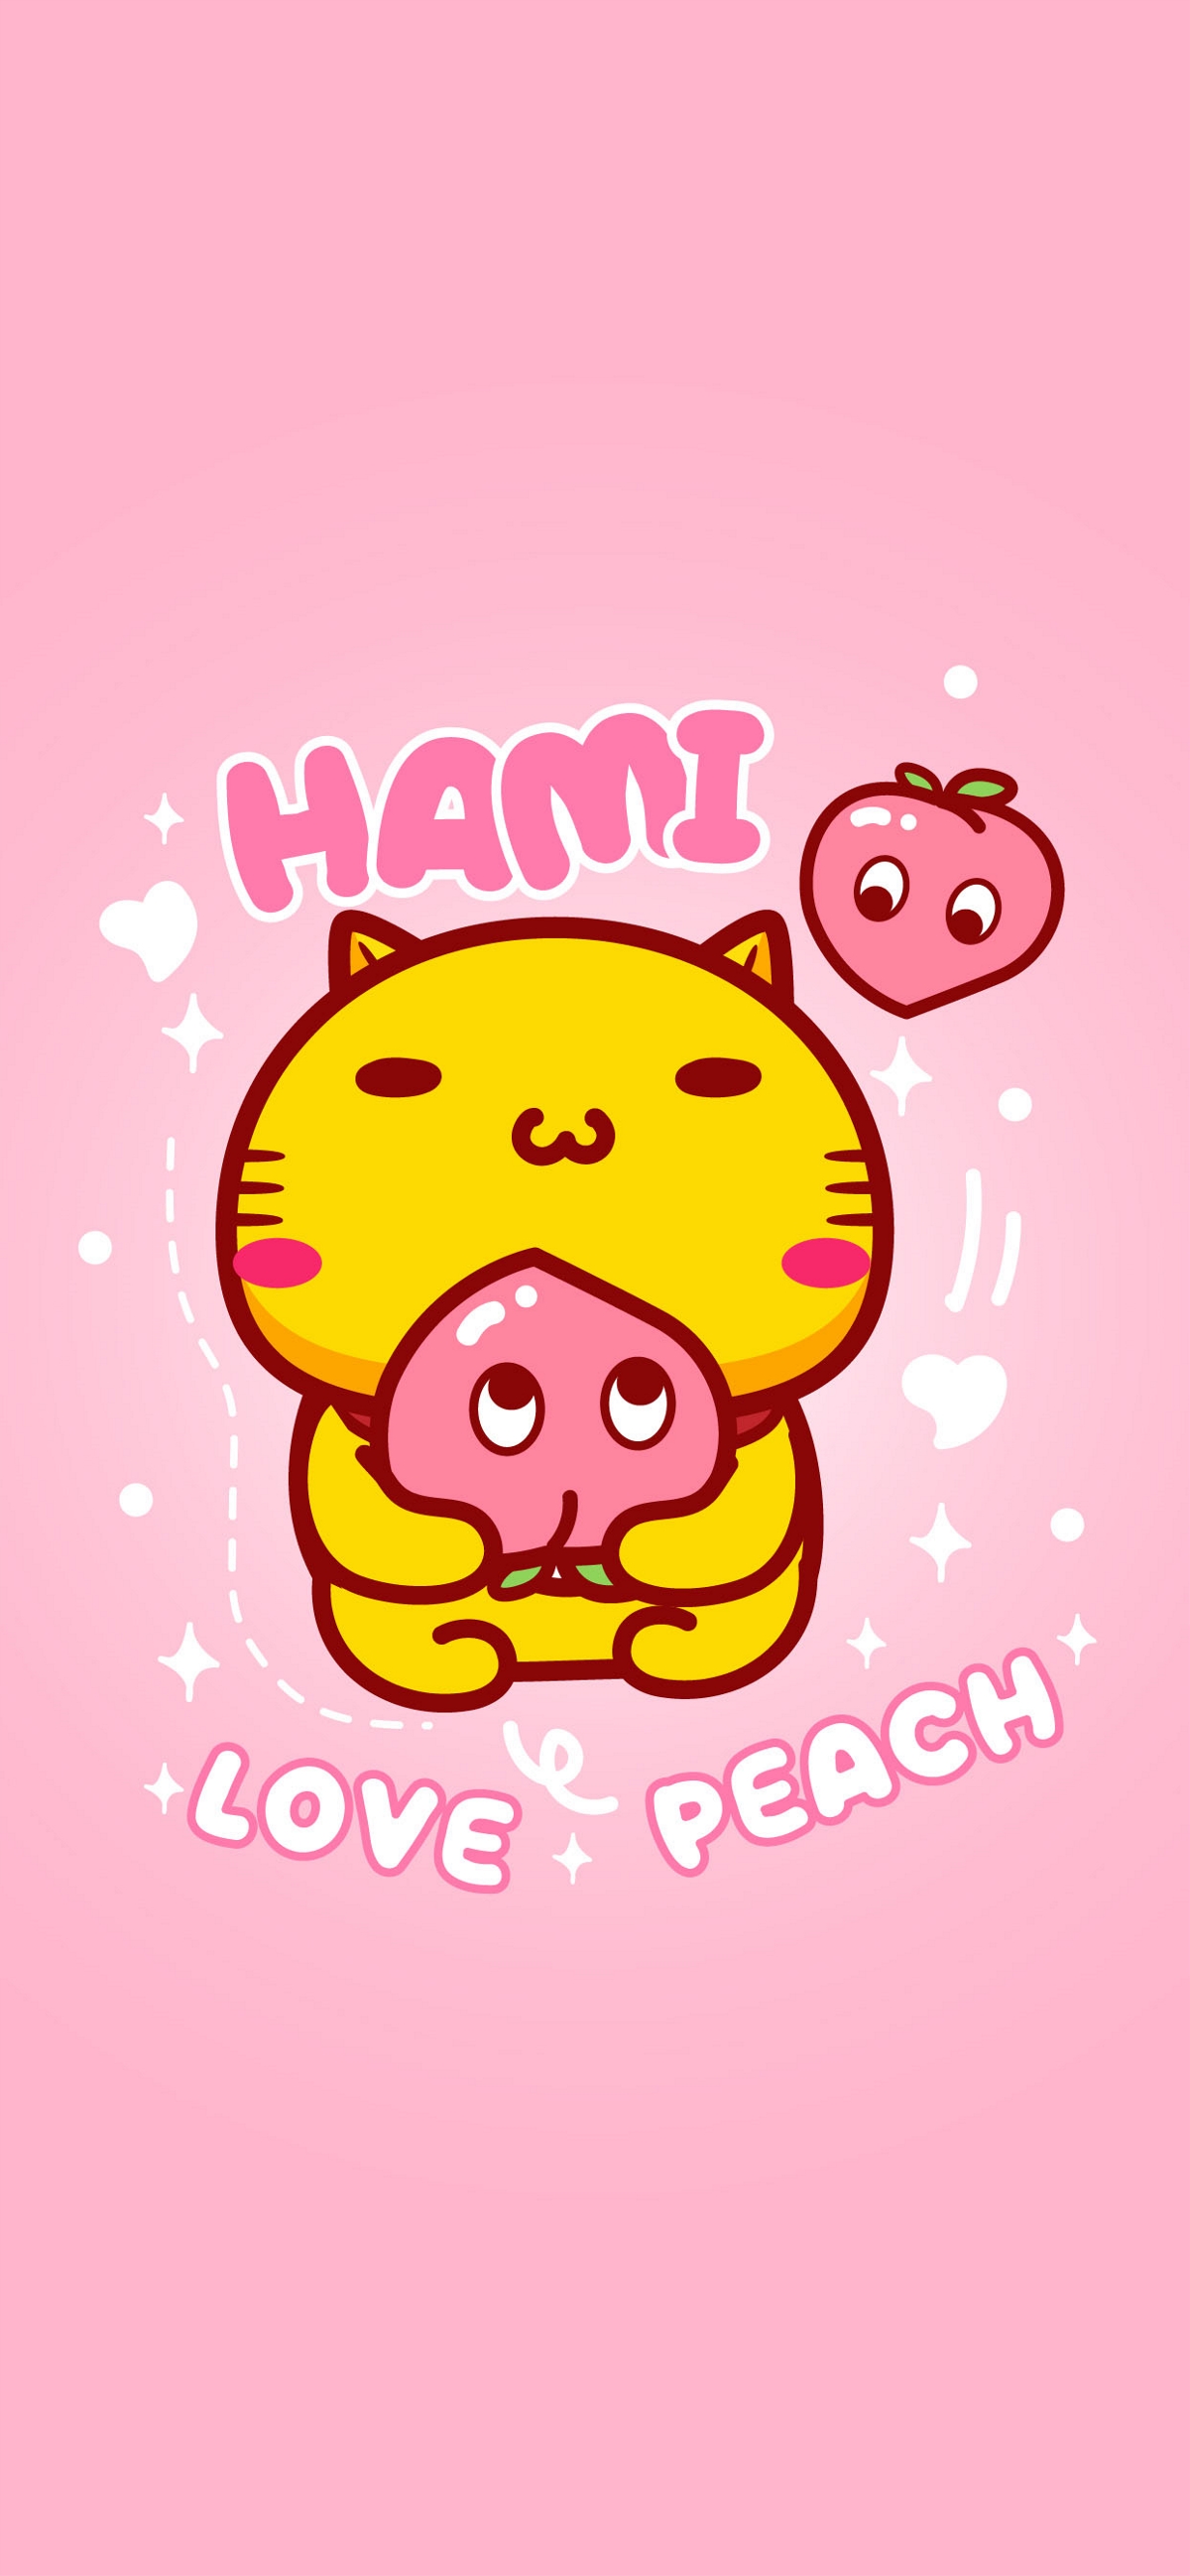 哈咪猫爱桃子